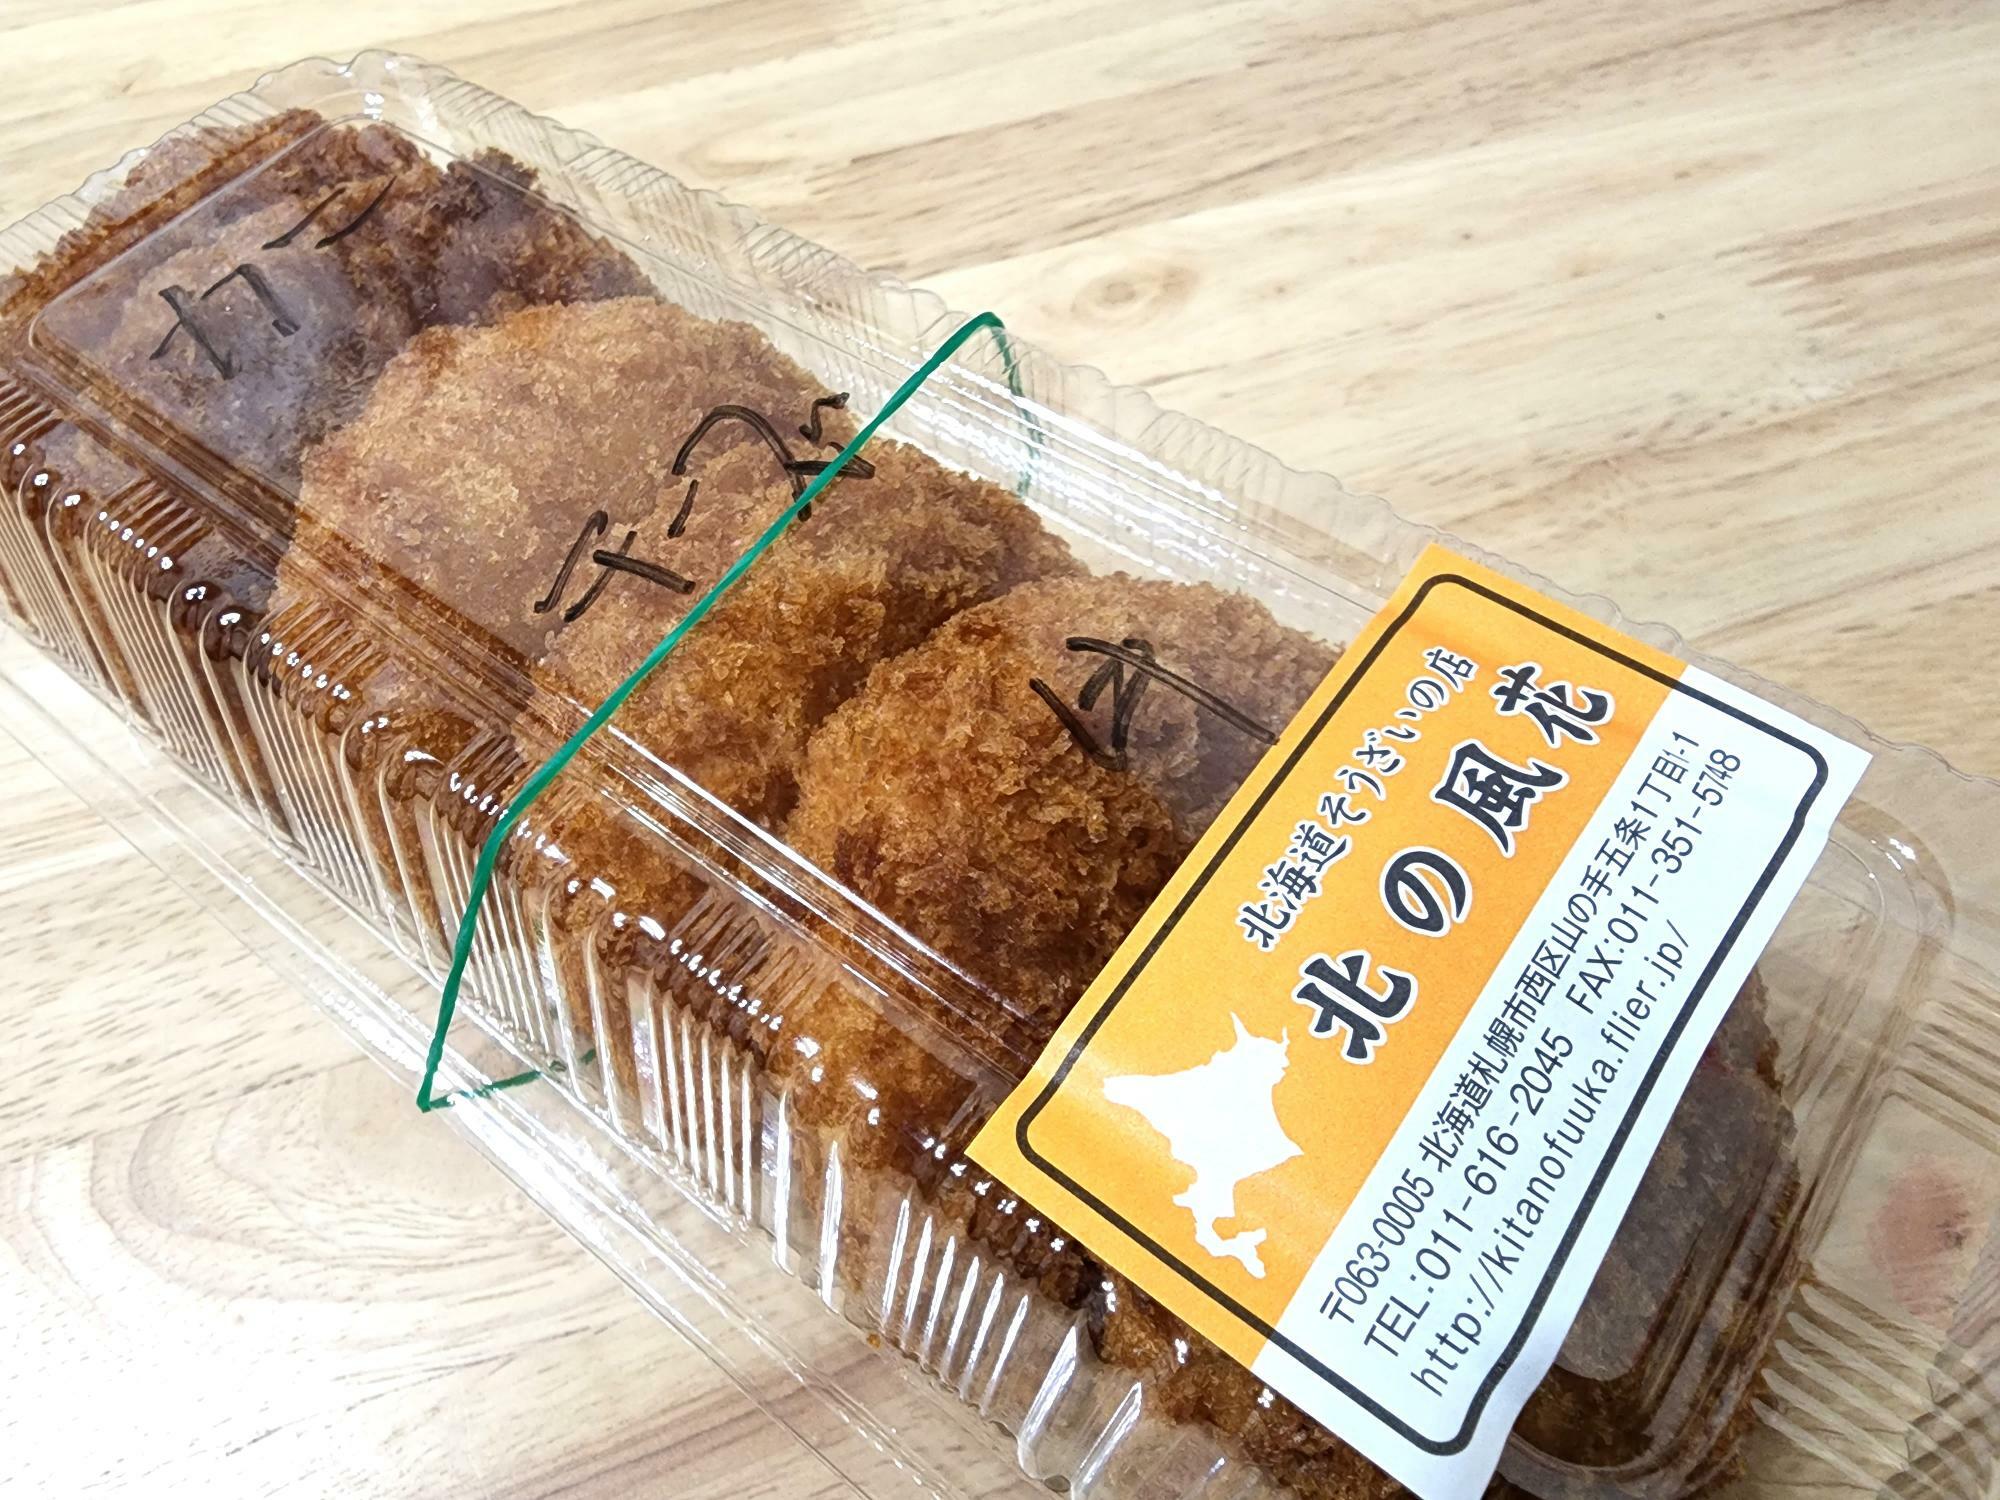 日本の味めぐり「北海道コロッケ 北の風花」で購入したコロッケ。